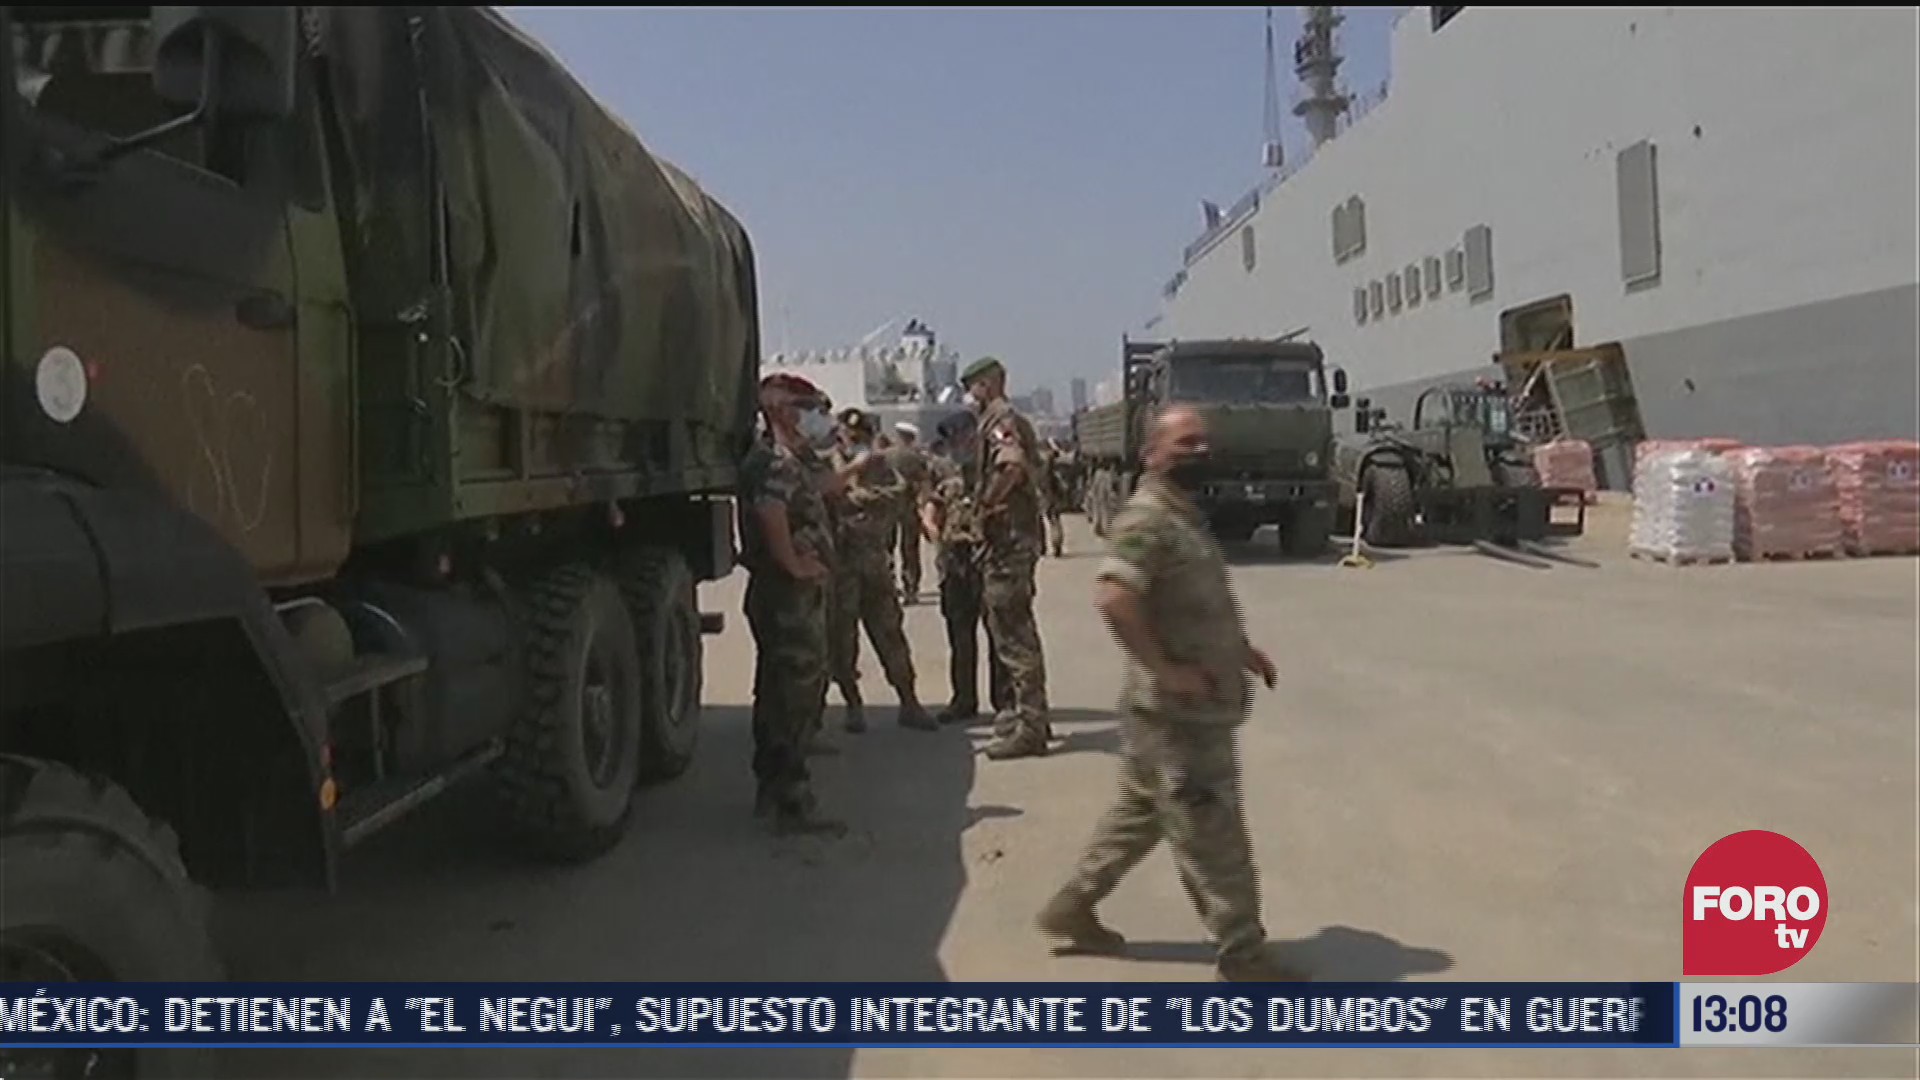 francia envia 700 soldados a libano